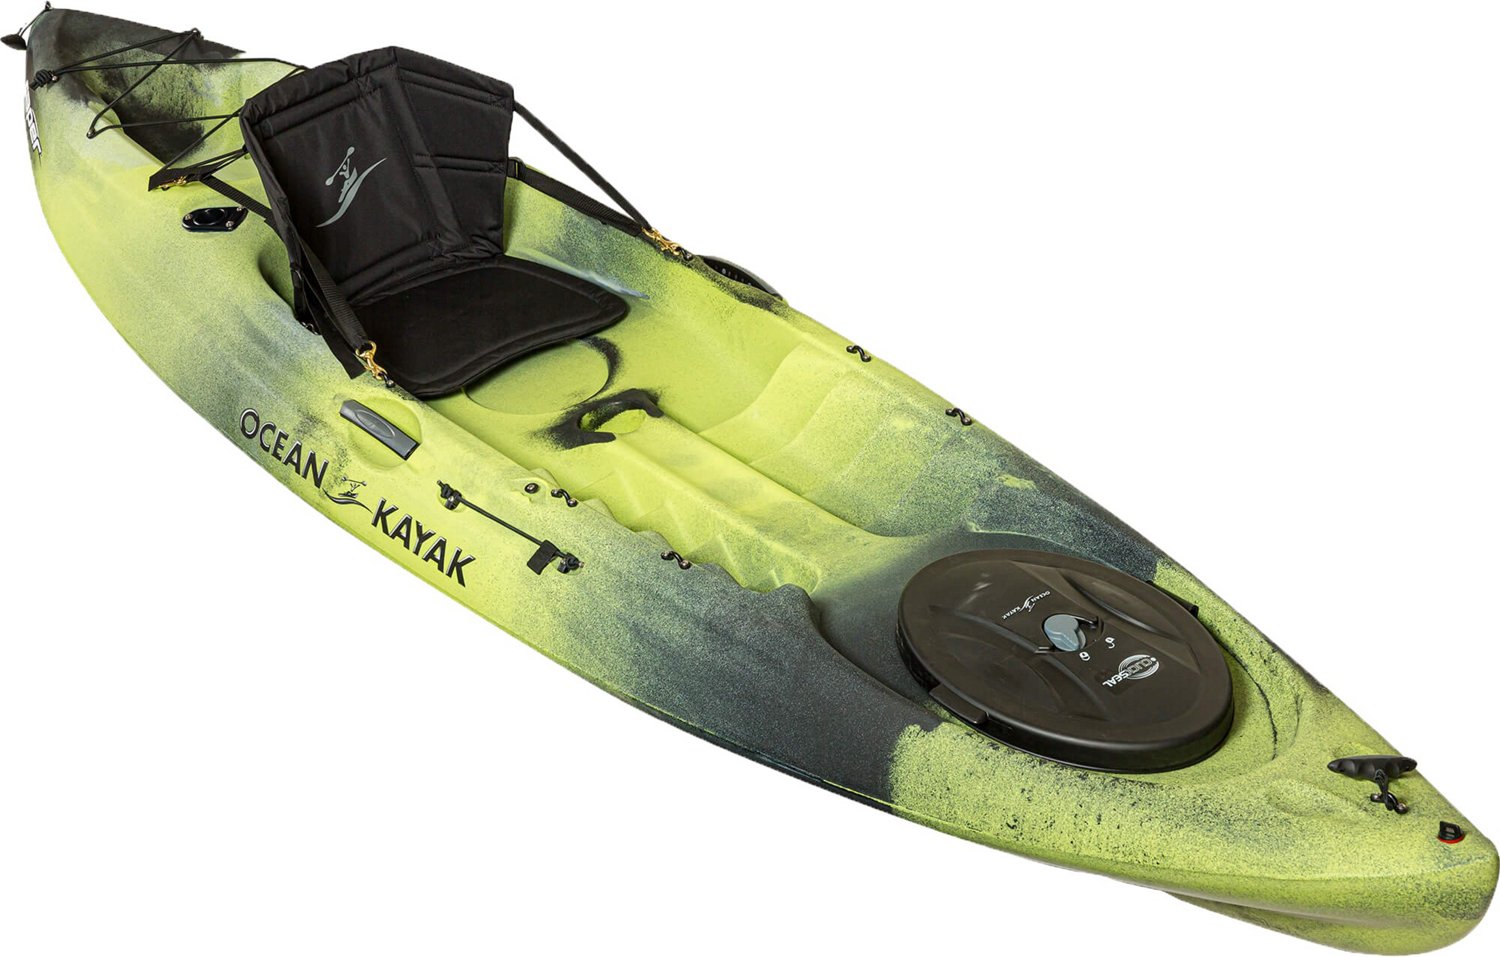 Ocean Kayak 11 ft Ocean Caper Kayak